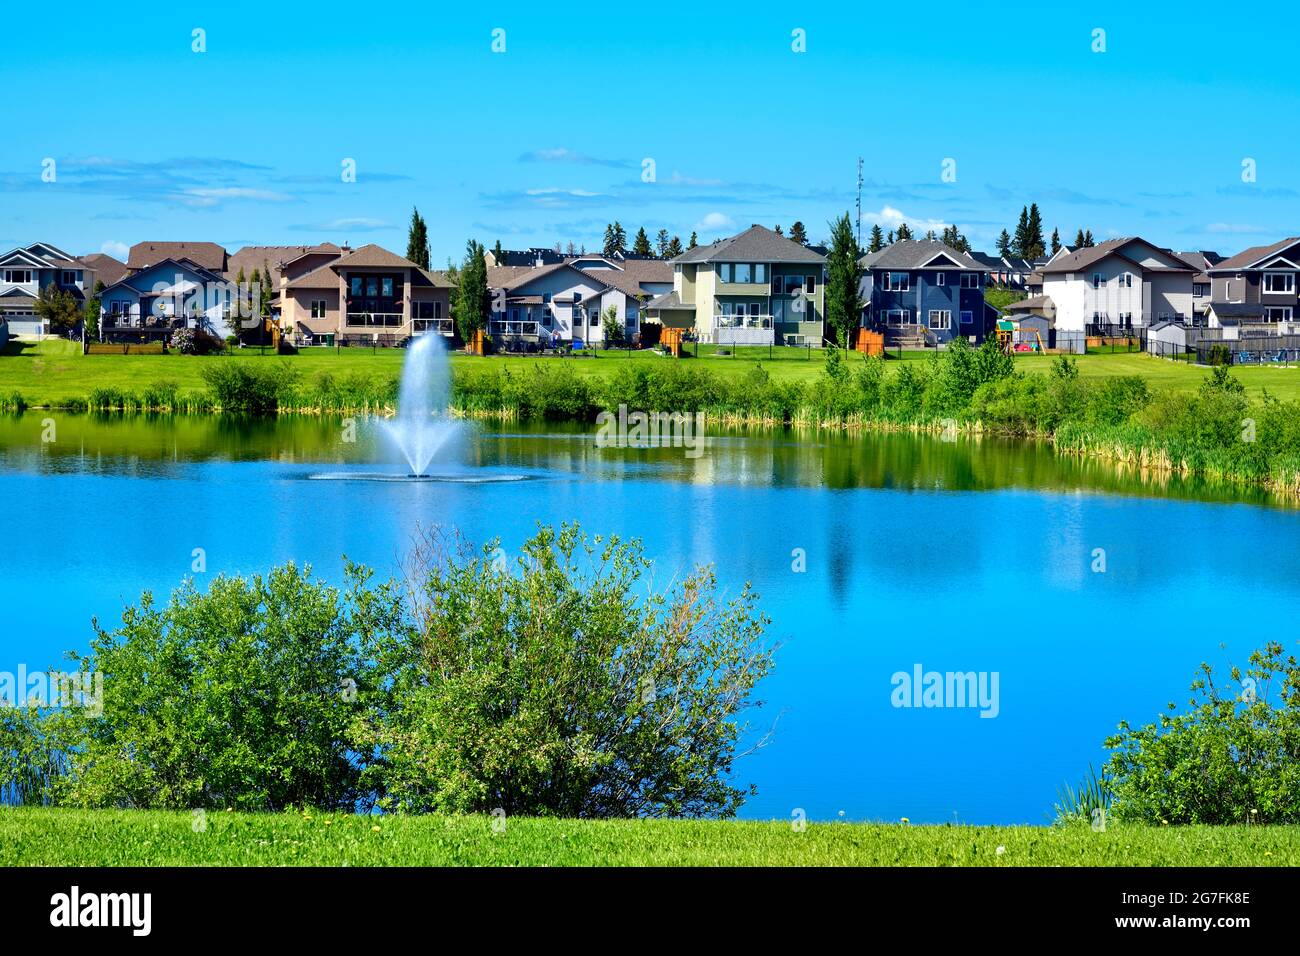 Eine urbane Landschaft mit Grünflächen, Teich, Häusern und blauem Himmel in Morinville Alberta, Kanada. Stockfoto